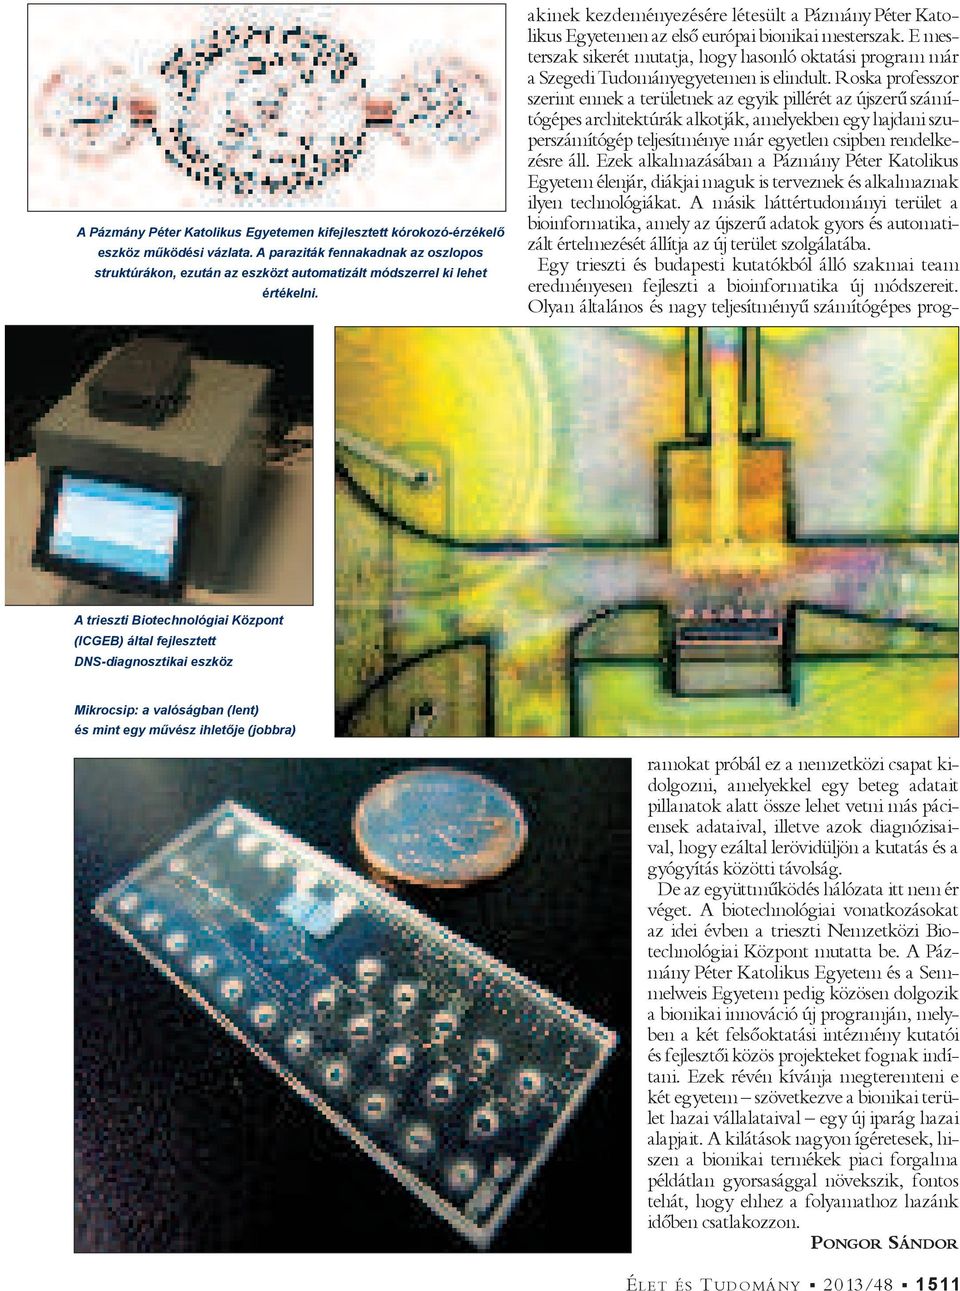 A trieszti Biotechnológiai Központ (ICGEB) által fejlesztett DNS-diagnosztikai eszköz Mikrocsip: a valóságban (lent) és mint egy m vész ihlet je (jobbra) akinek kezdeményezésére létesült a Pázmány